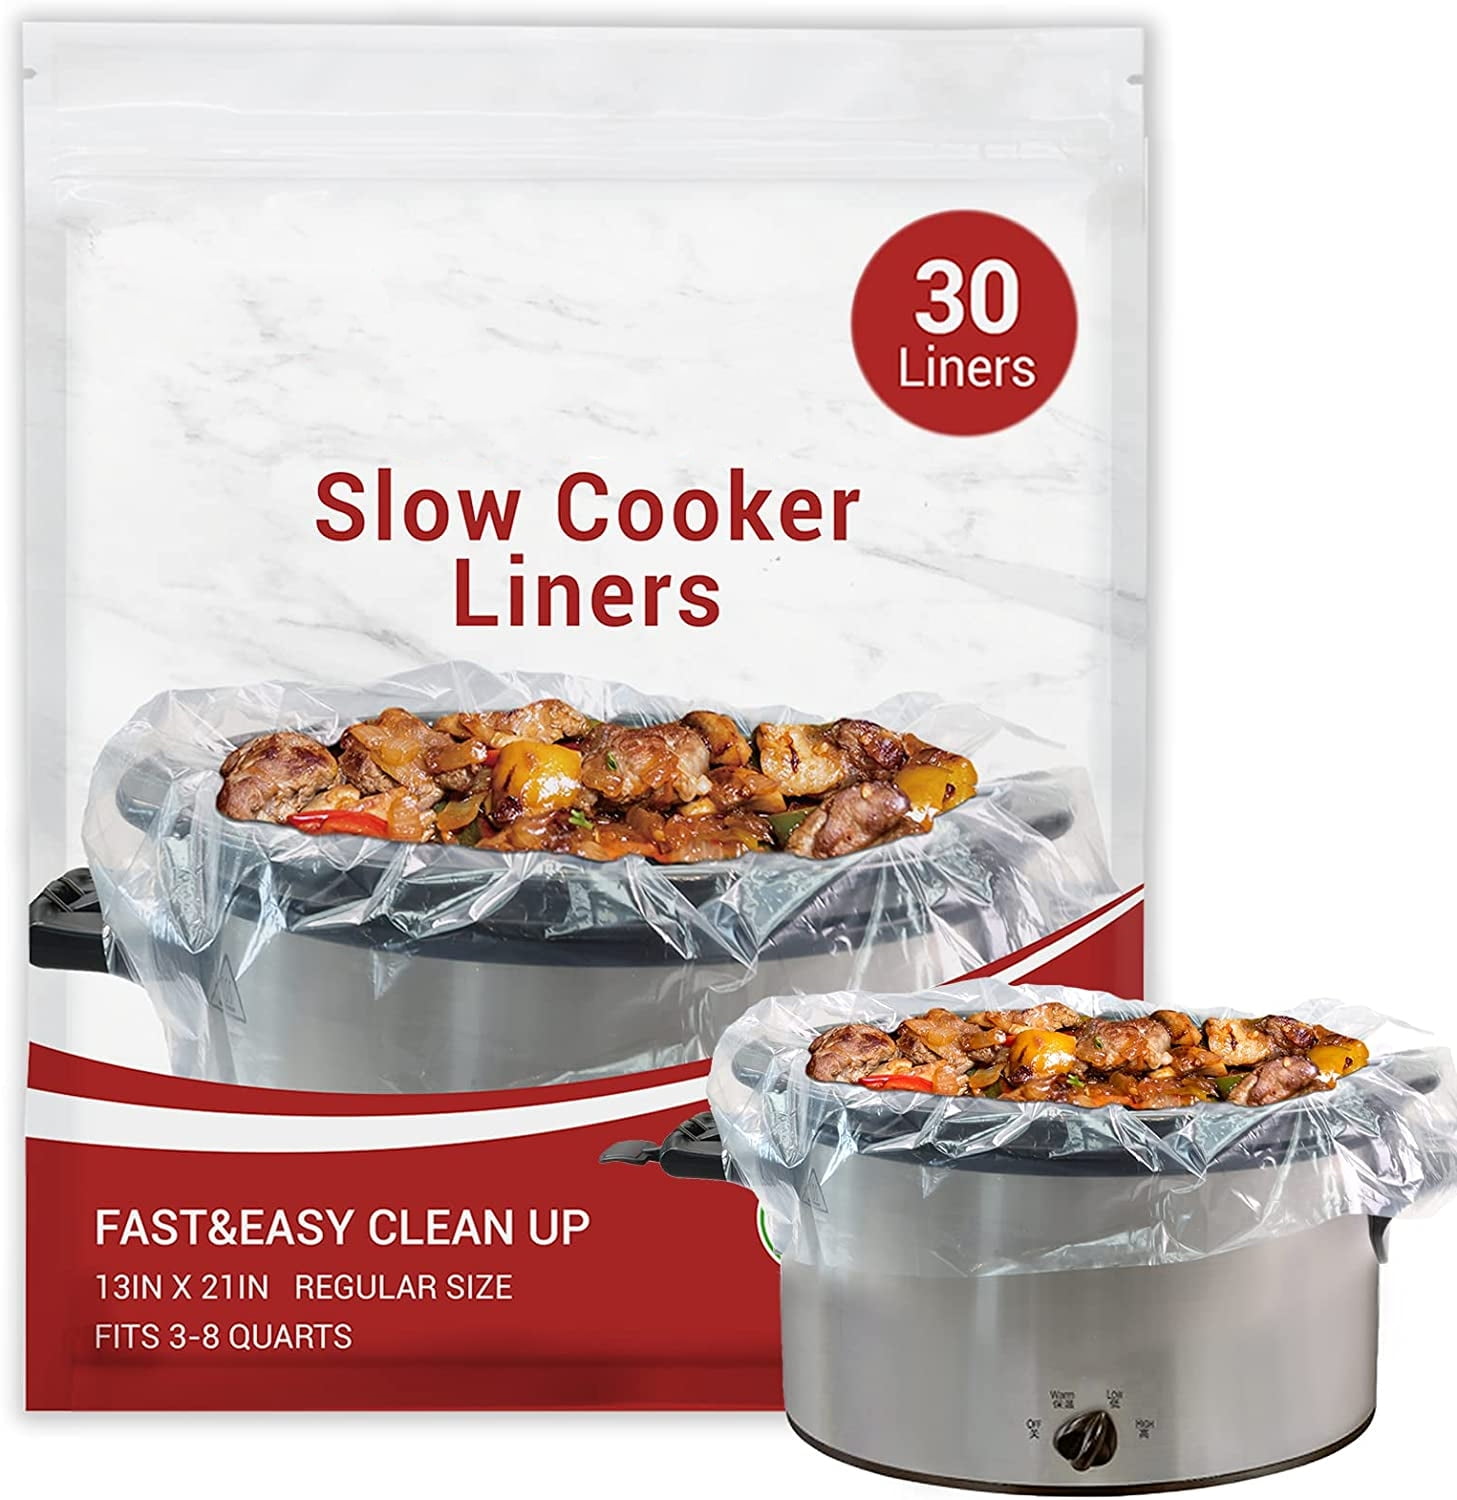 Crock Pot 3-7 qt. Clear Plastic Slow Cooker Liner